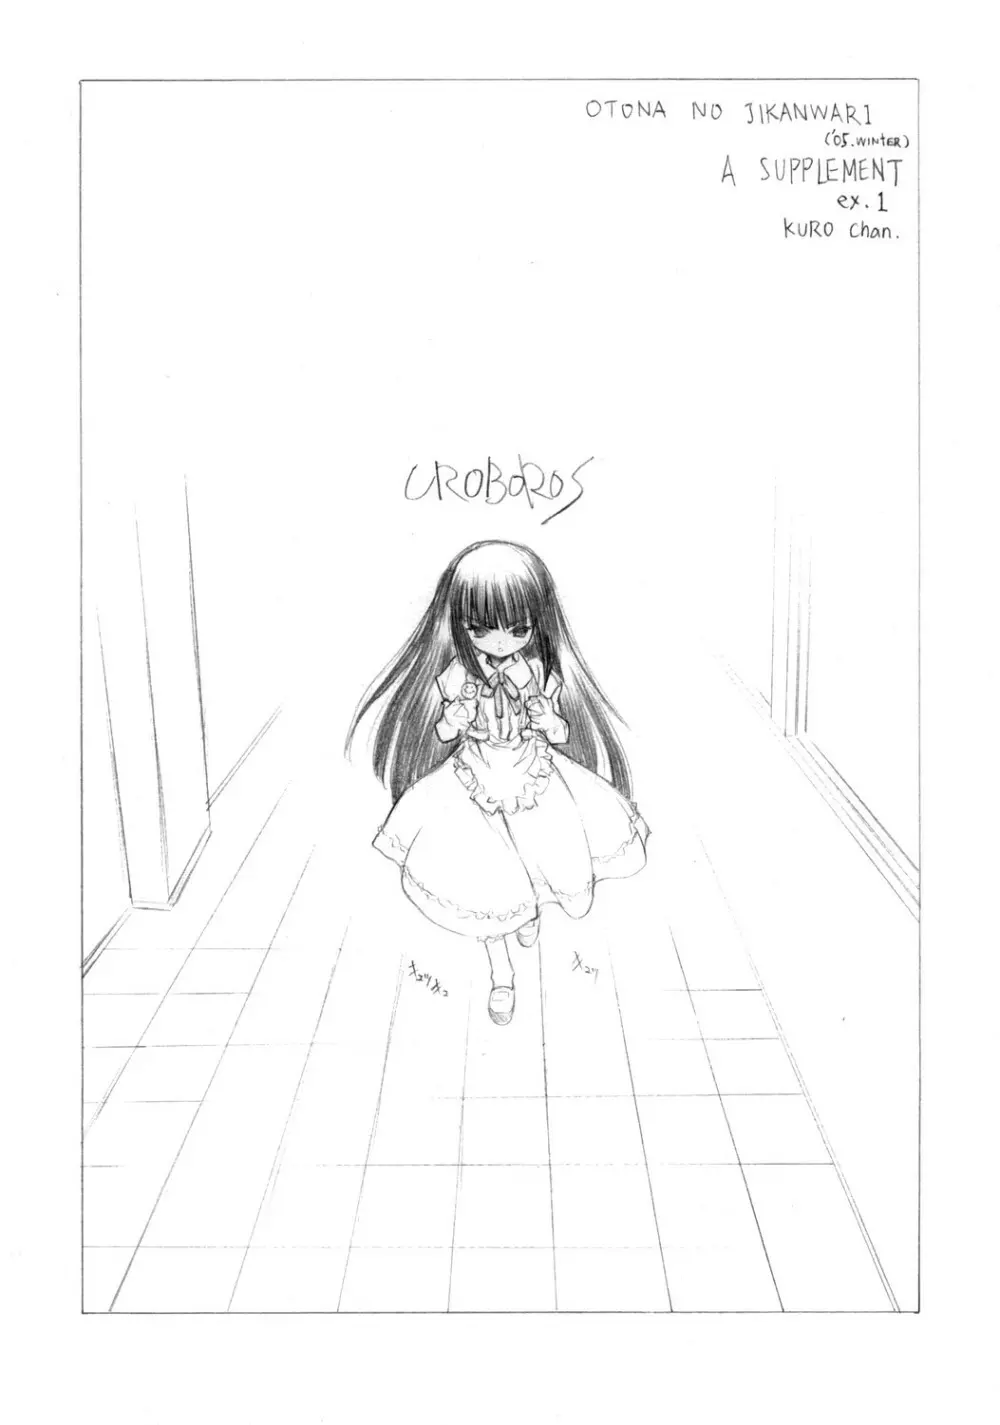 (ぷにケット 13)[UROBOROS] OTONA NO JIKANWARI (’05.winter) A SUPPLEMENT ex.1 KURO chan (こどものじかん) 16ページ